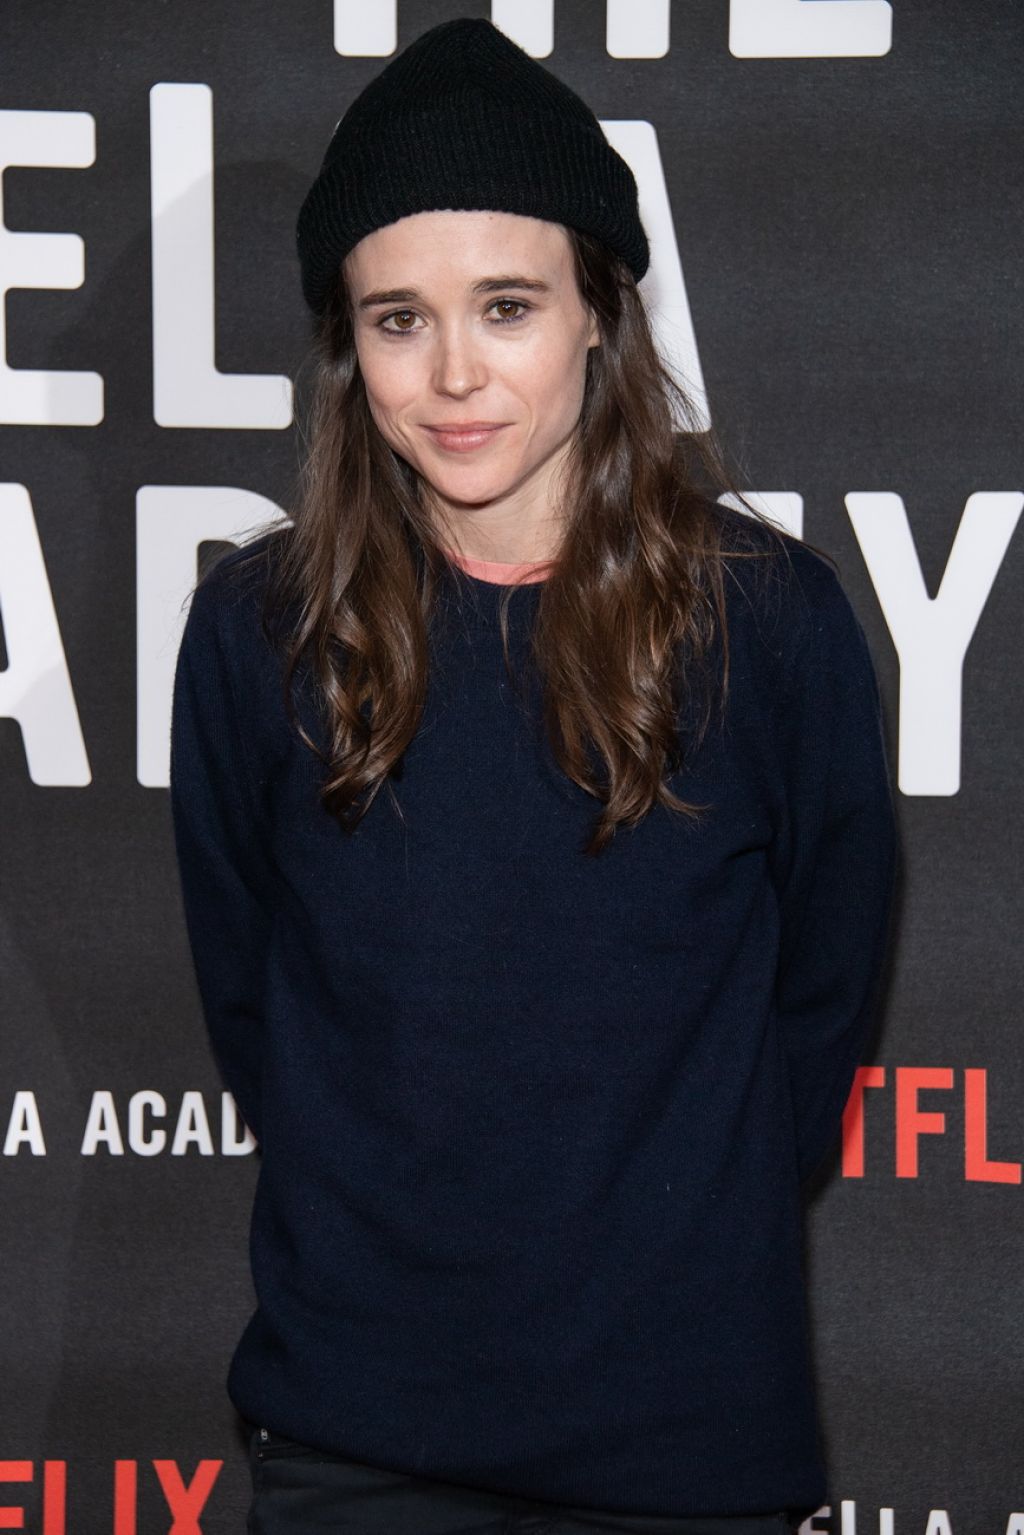 Ellen Page - "The Umbrella Academy" Special Screening in ...